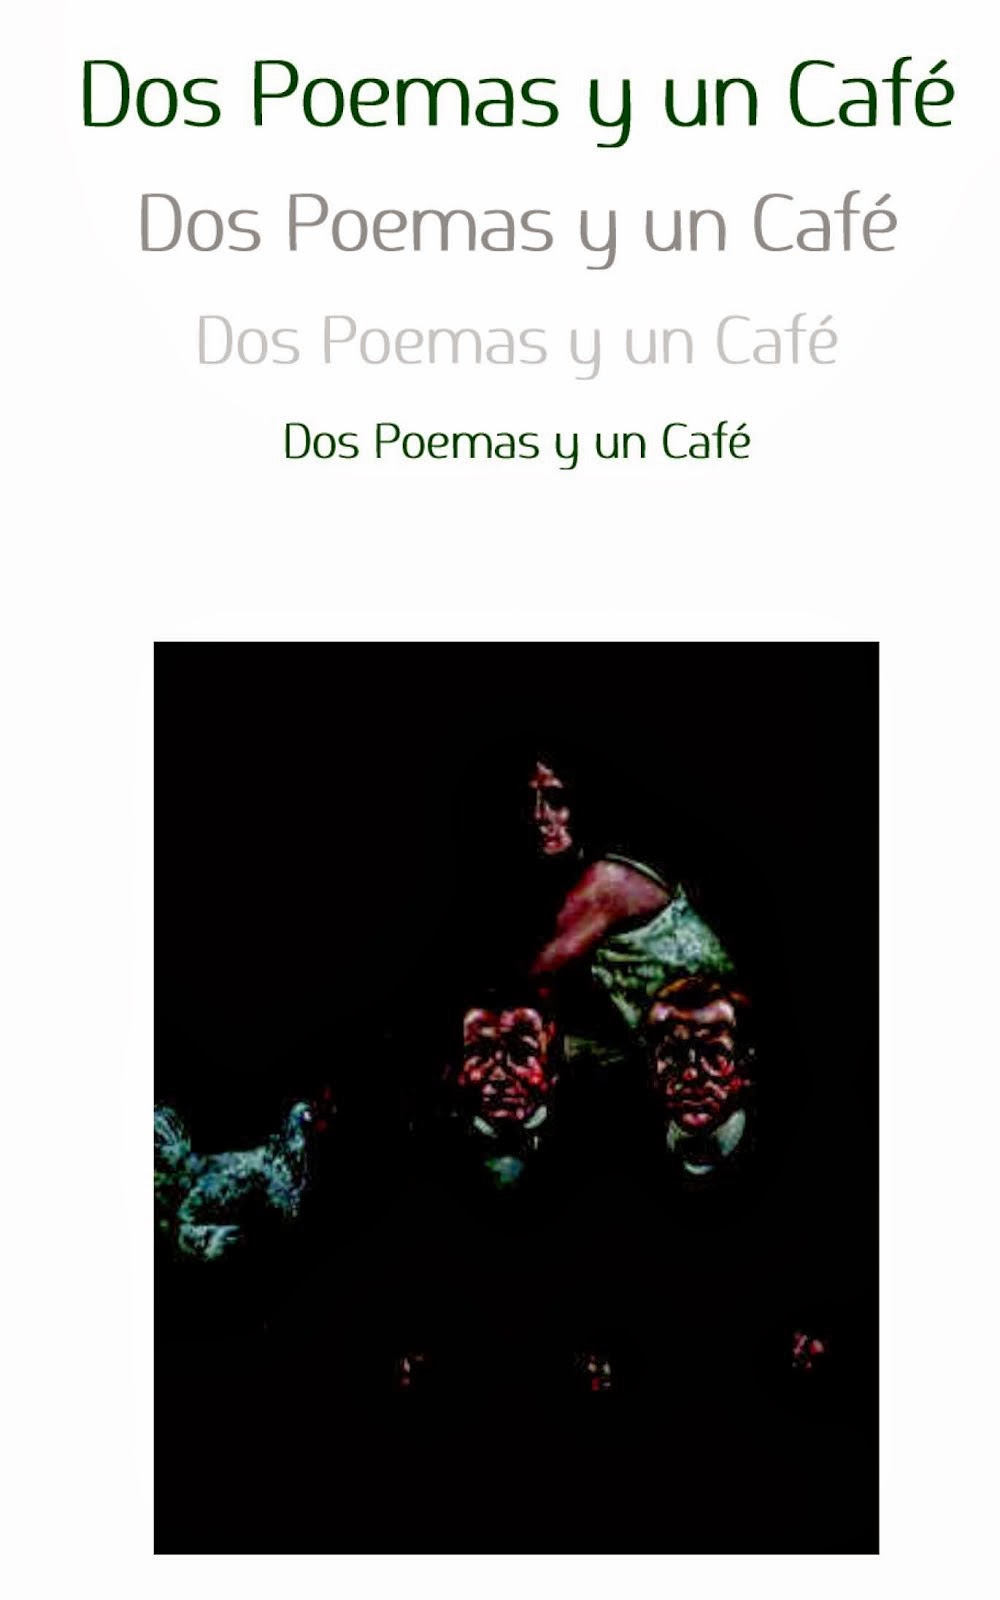 Dos poemas y un café